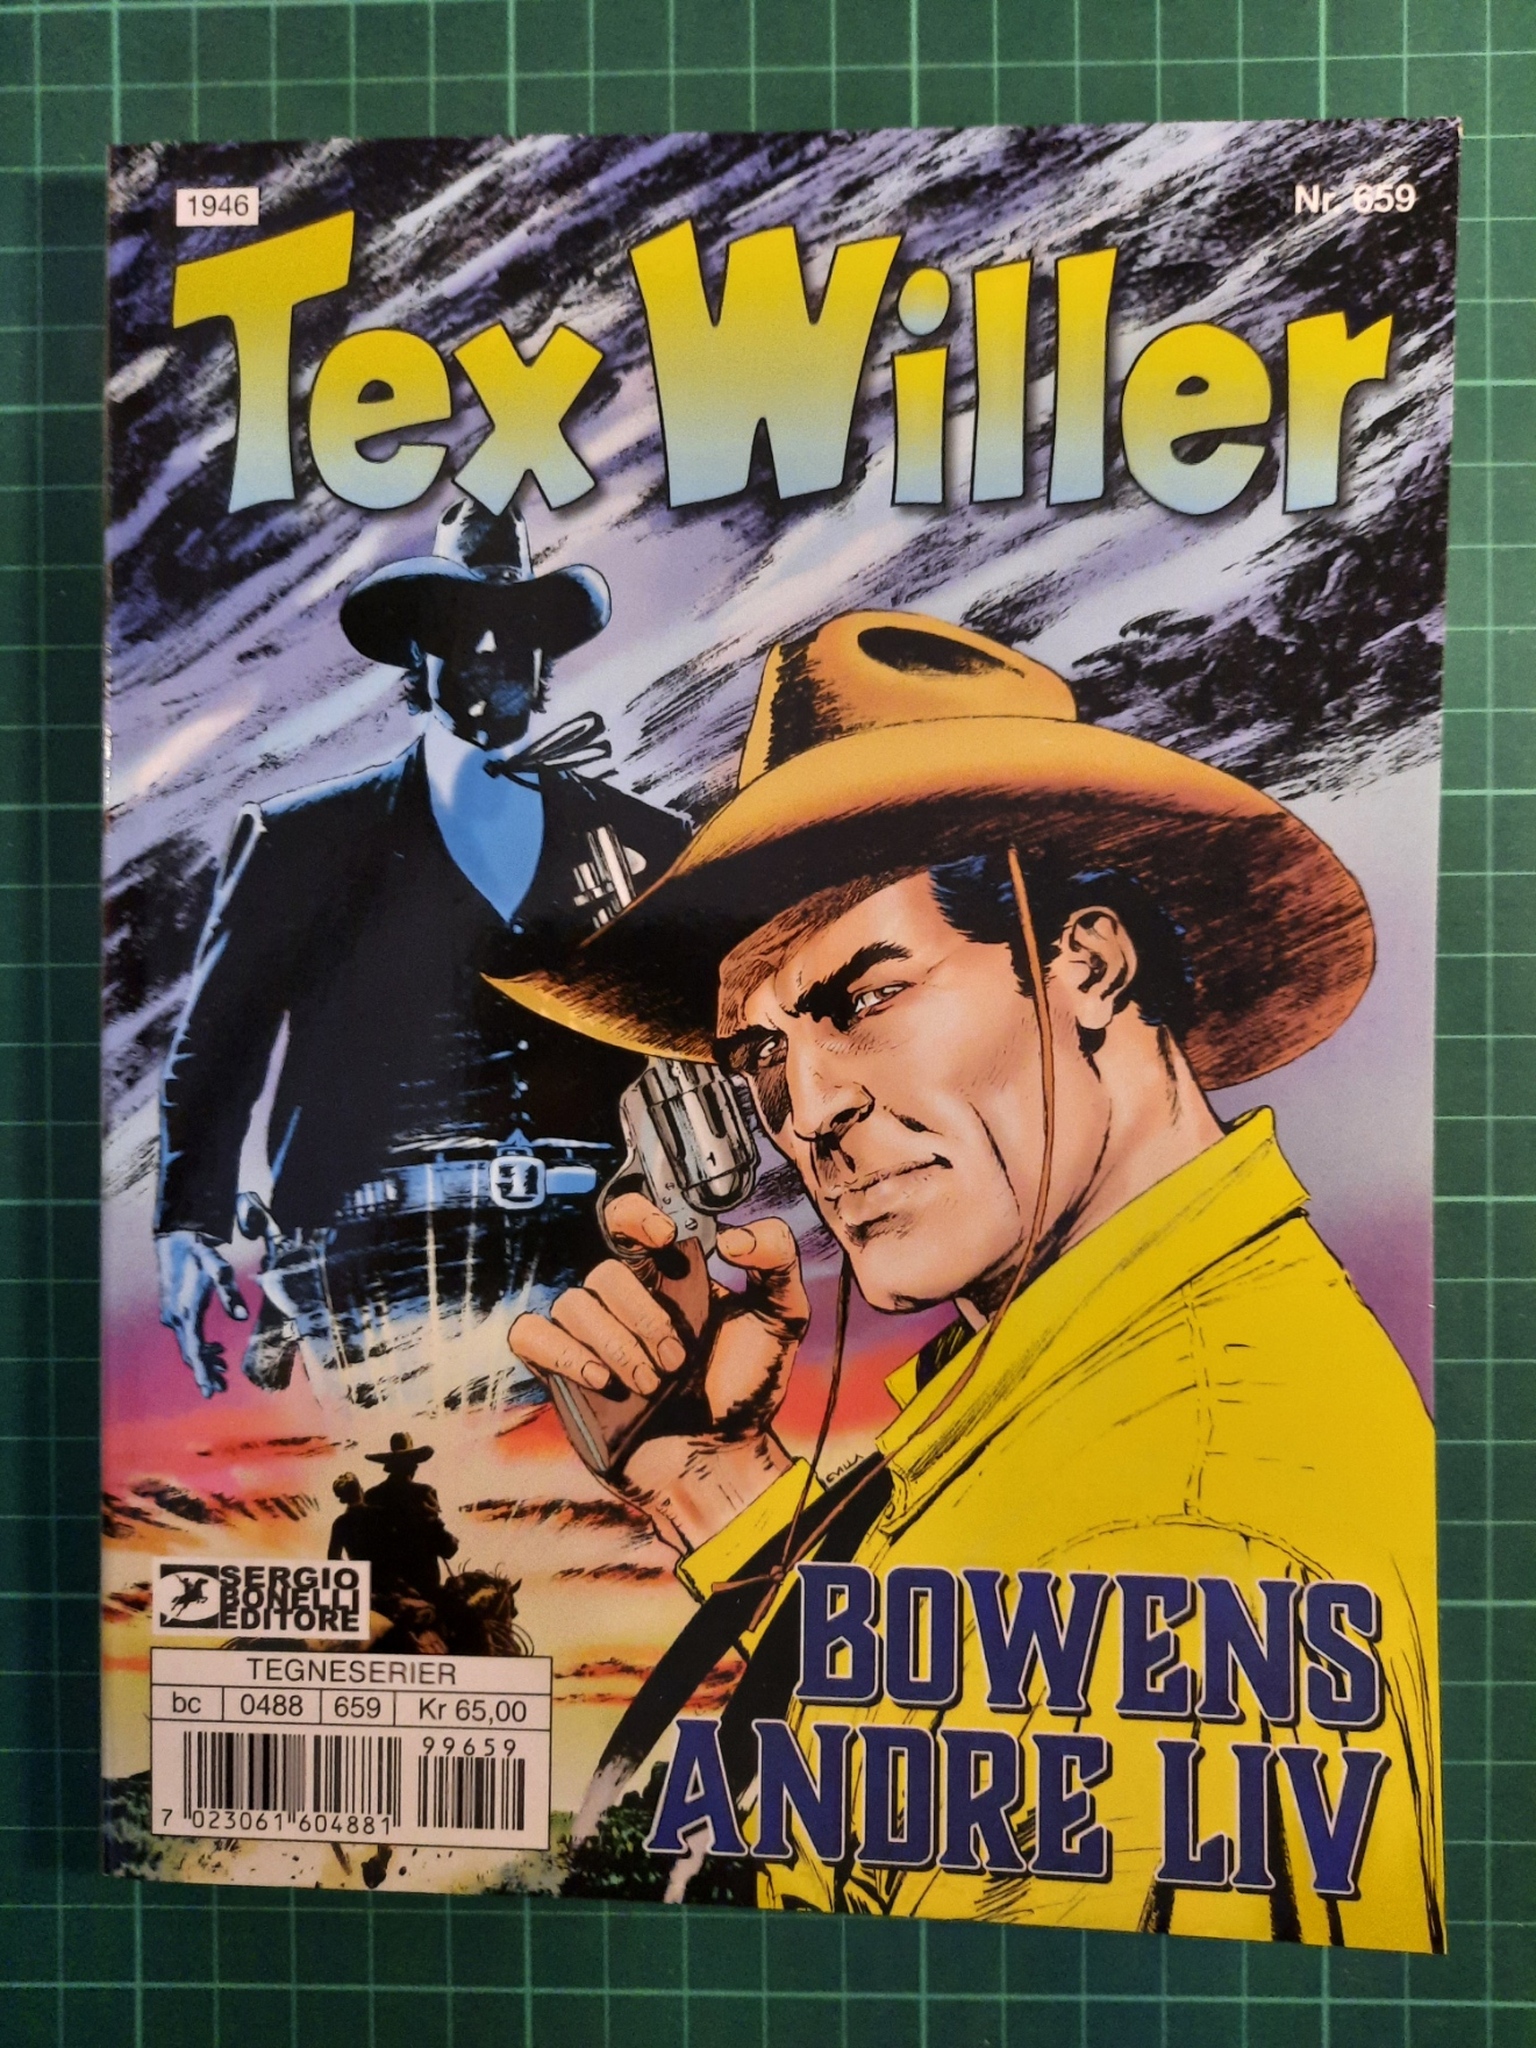 Tex Willer #659